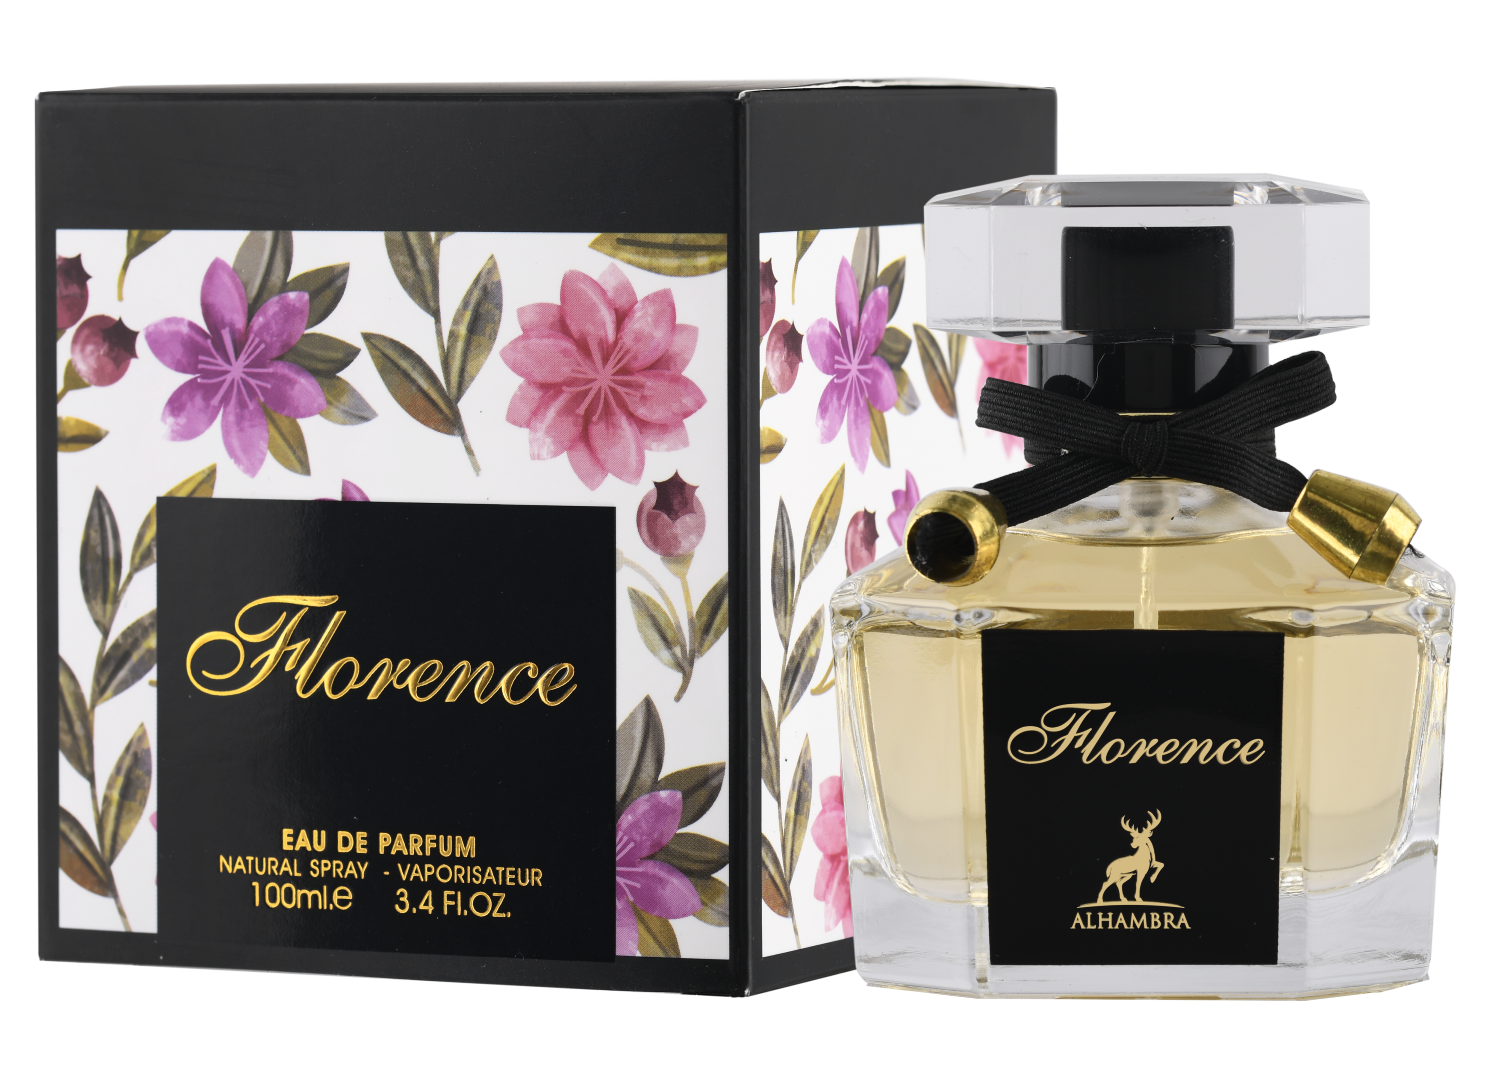 KALOS Maison Alhambra Eau De Parfum Spray 3.4 oz 100ml – Rafaelos